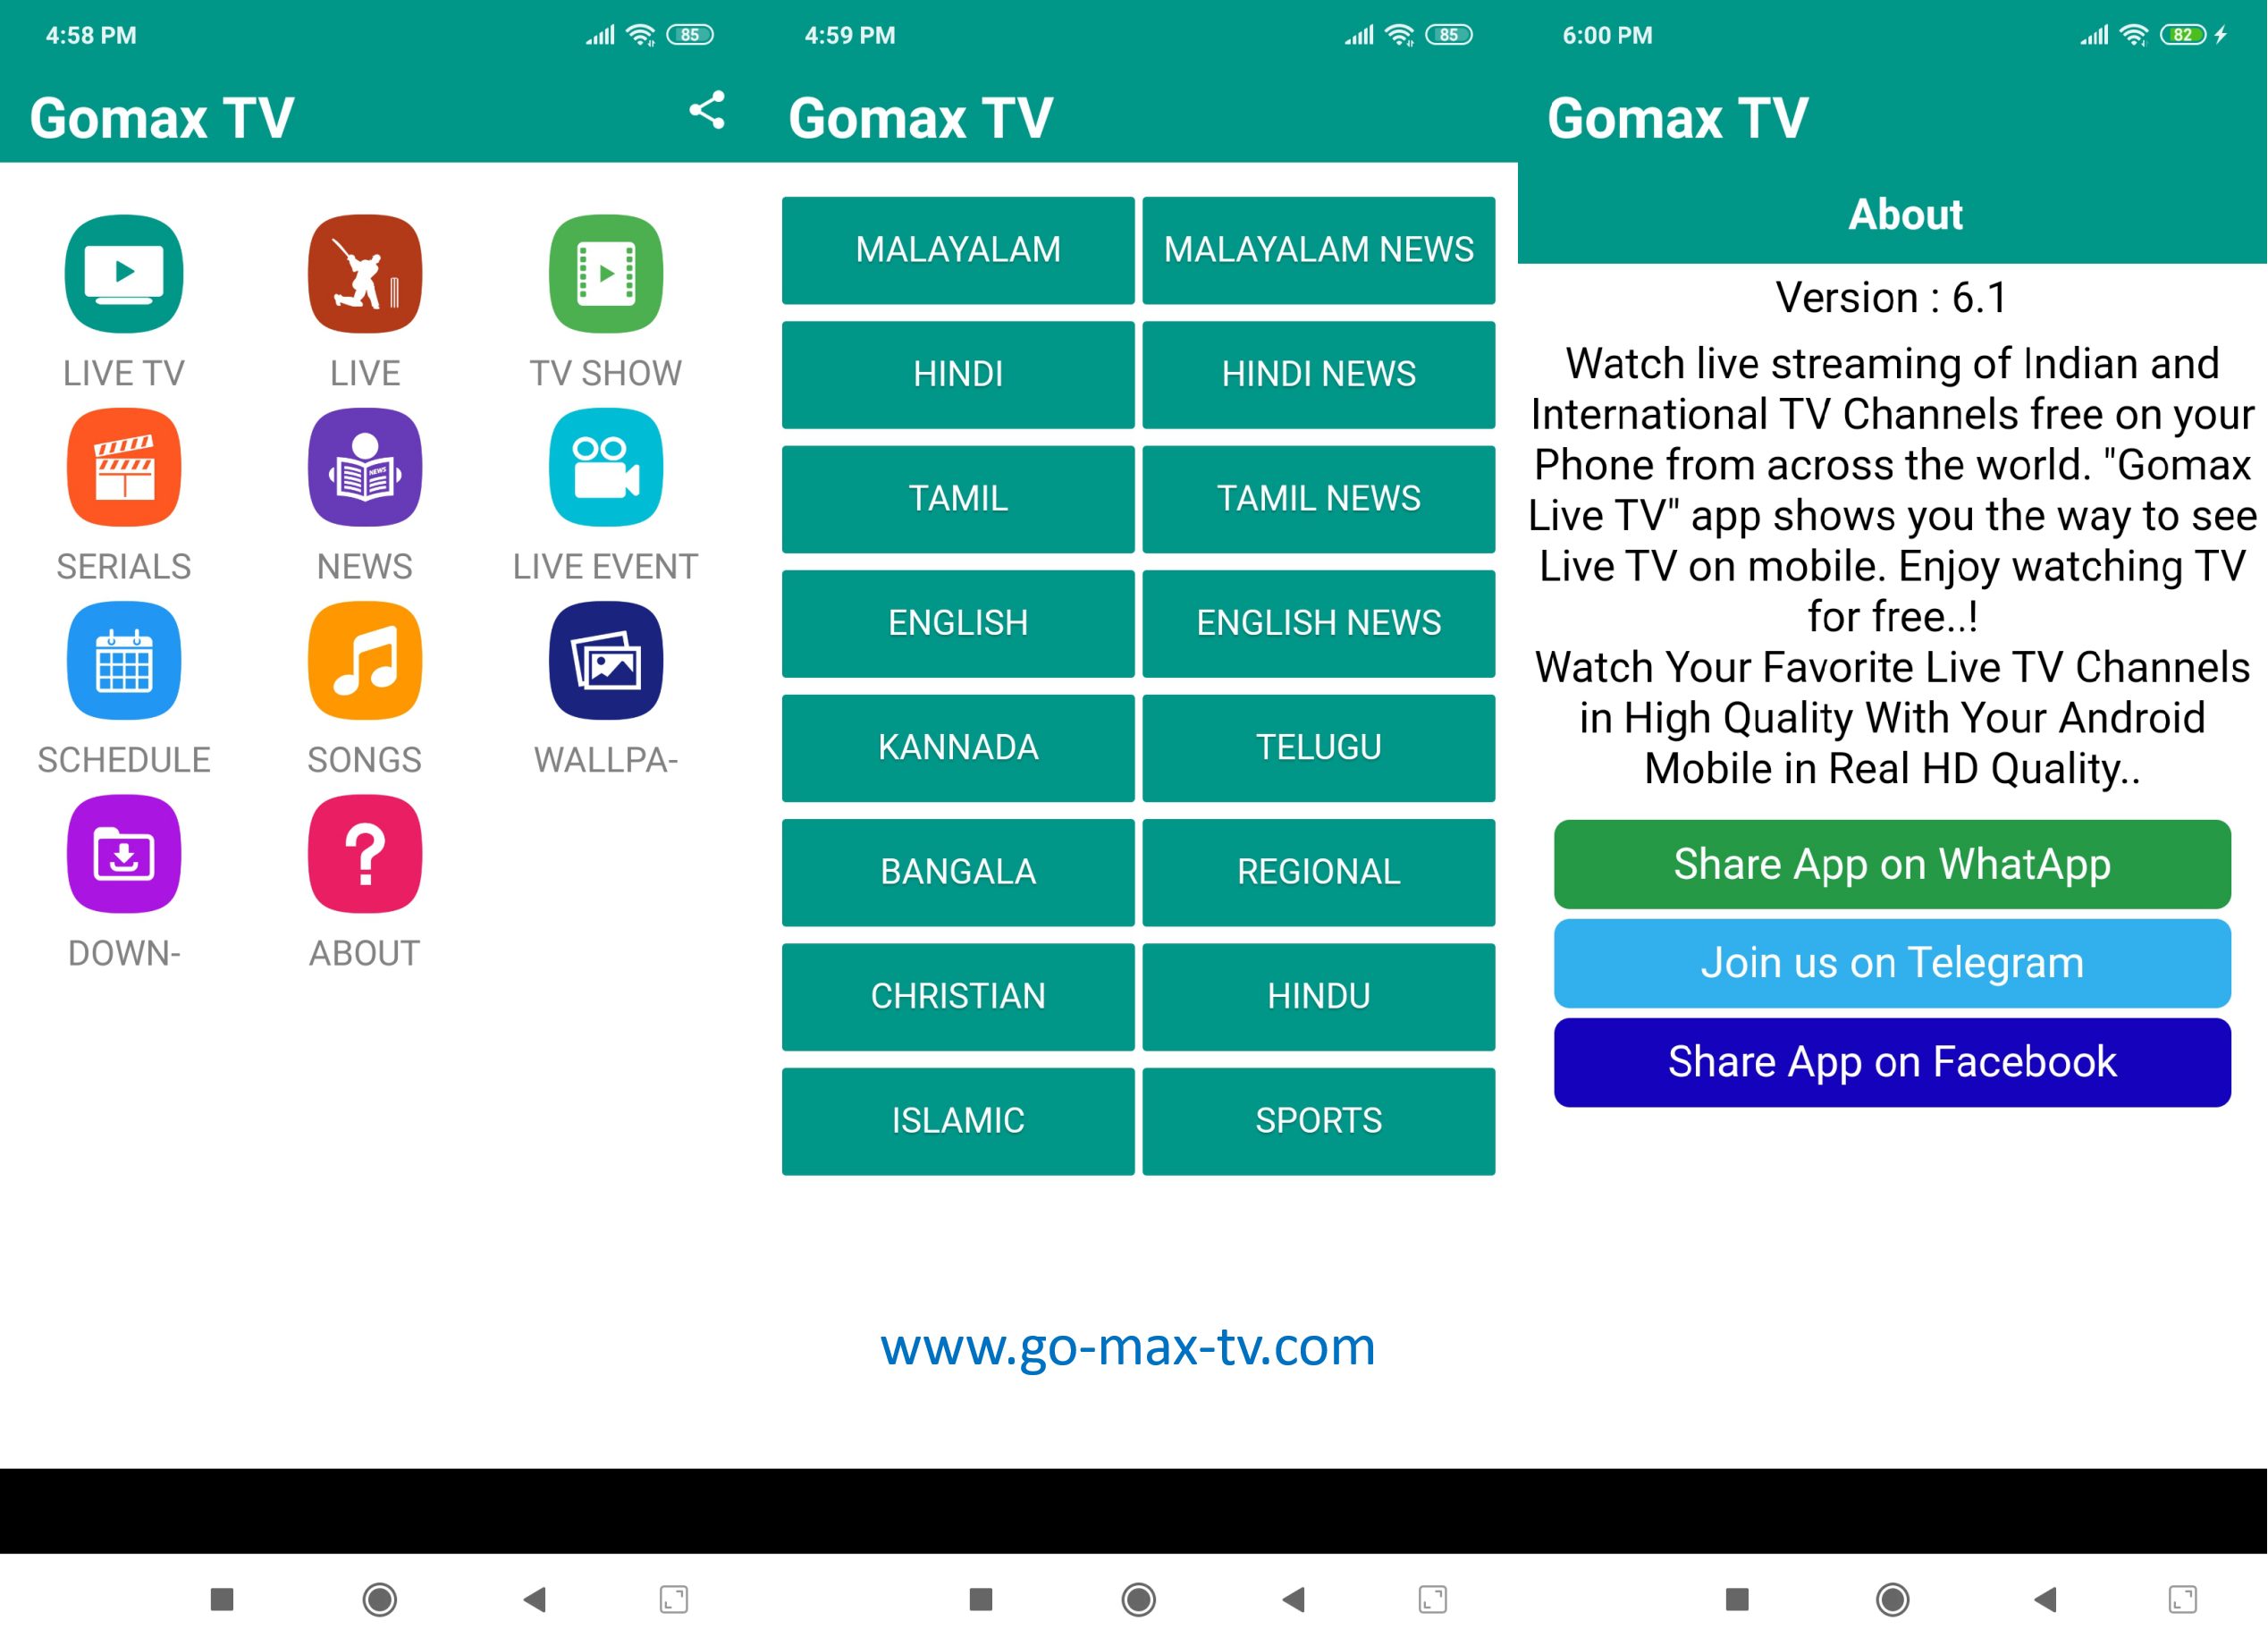 Gomax Live TV APK Free Download Latest Version 6.1 2021 - Gomax TV